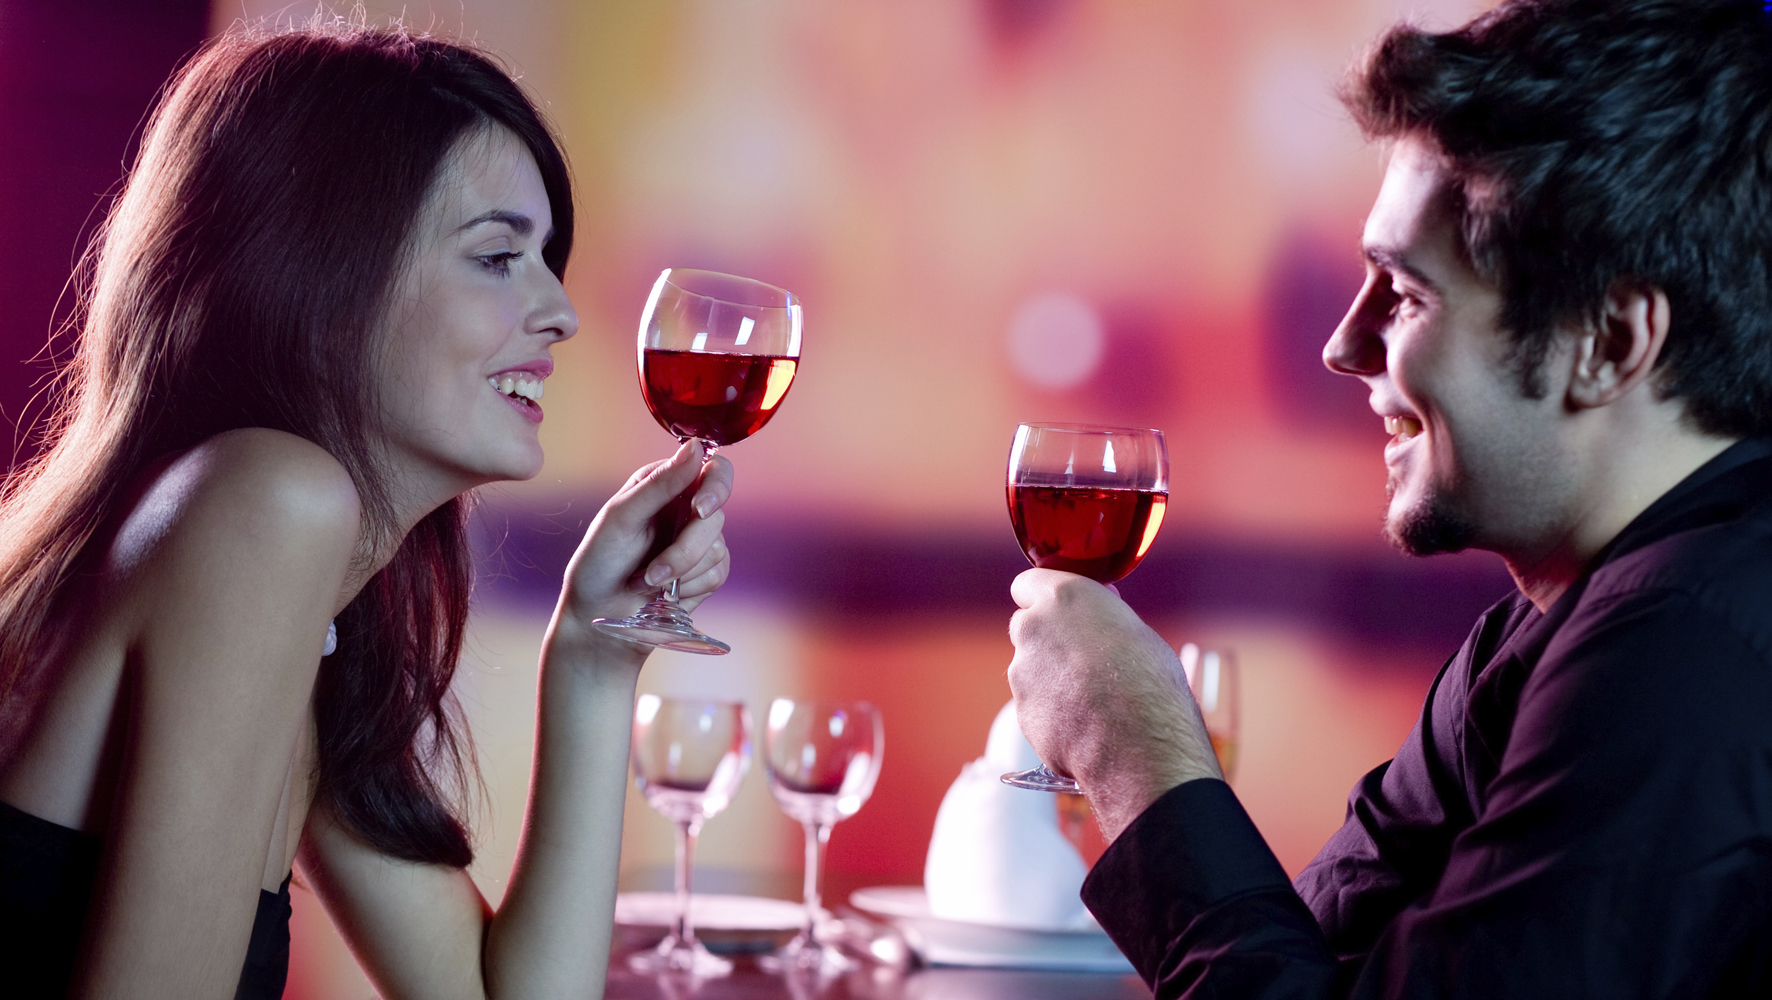  Consumo de alcohol hace más felices a las parejas: estudio